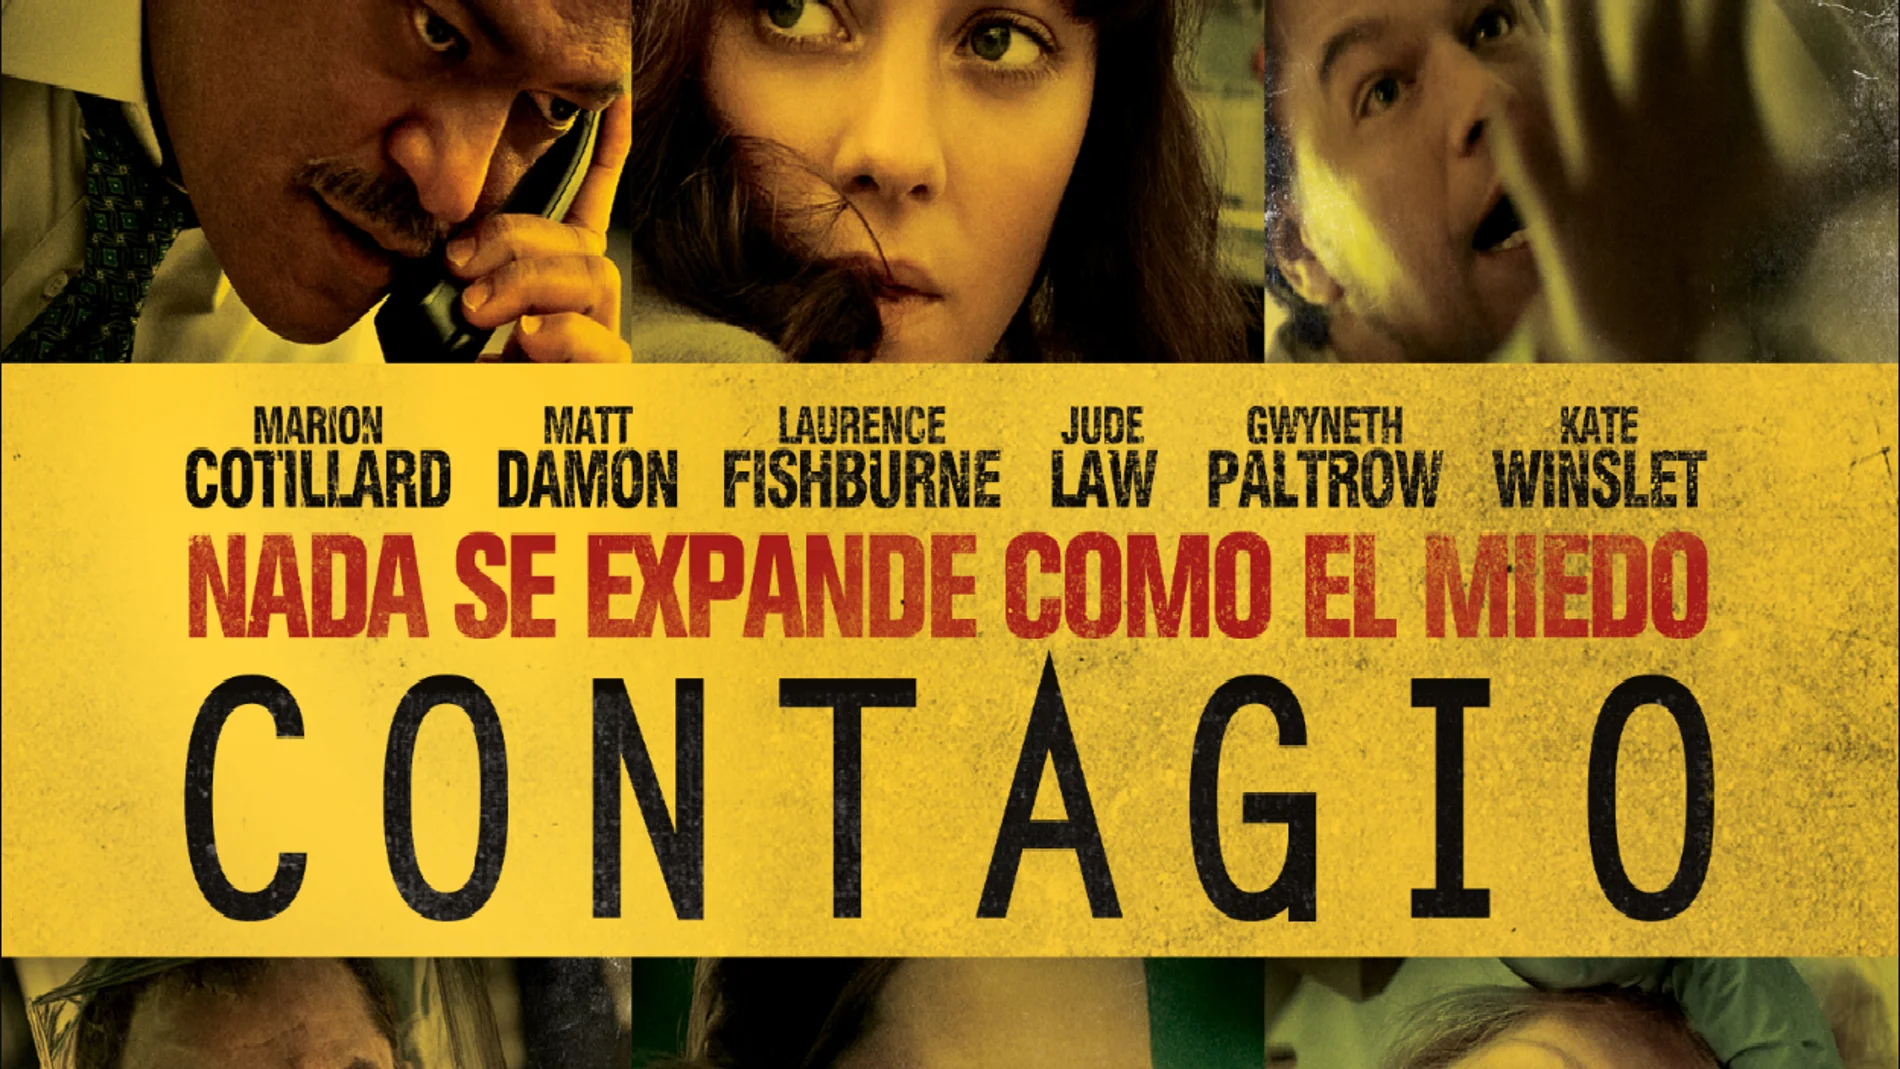 Cartel promocional de la película 'Contagio'